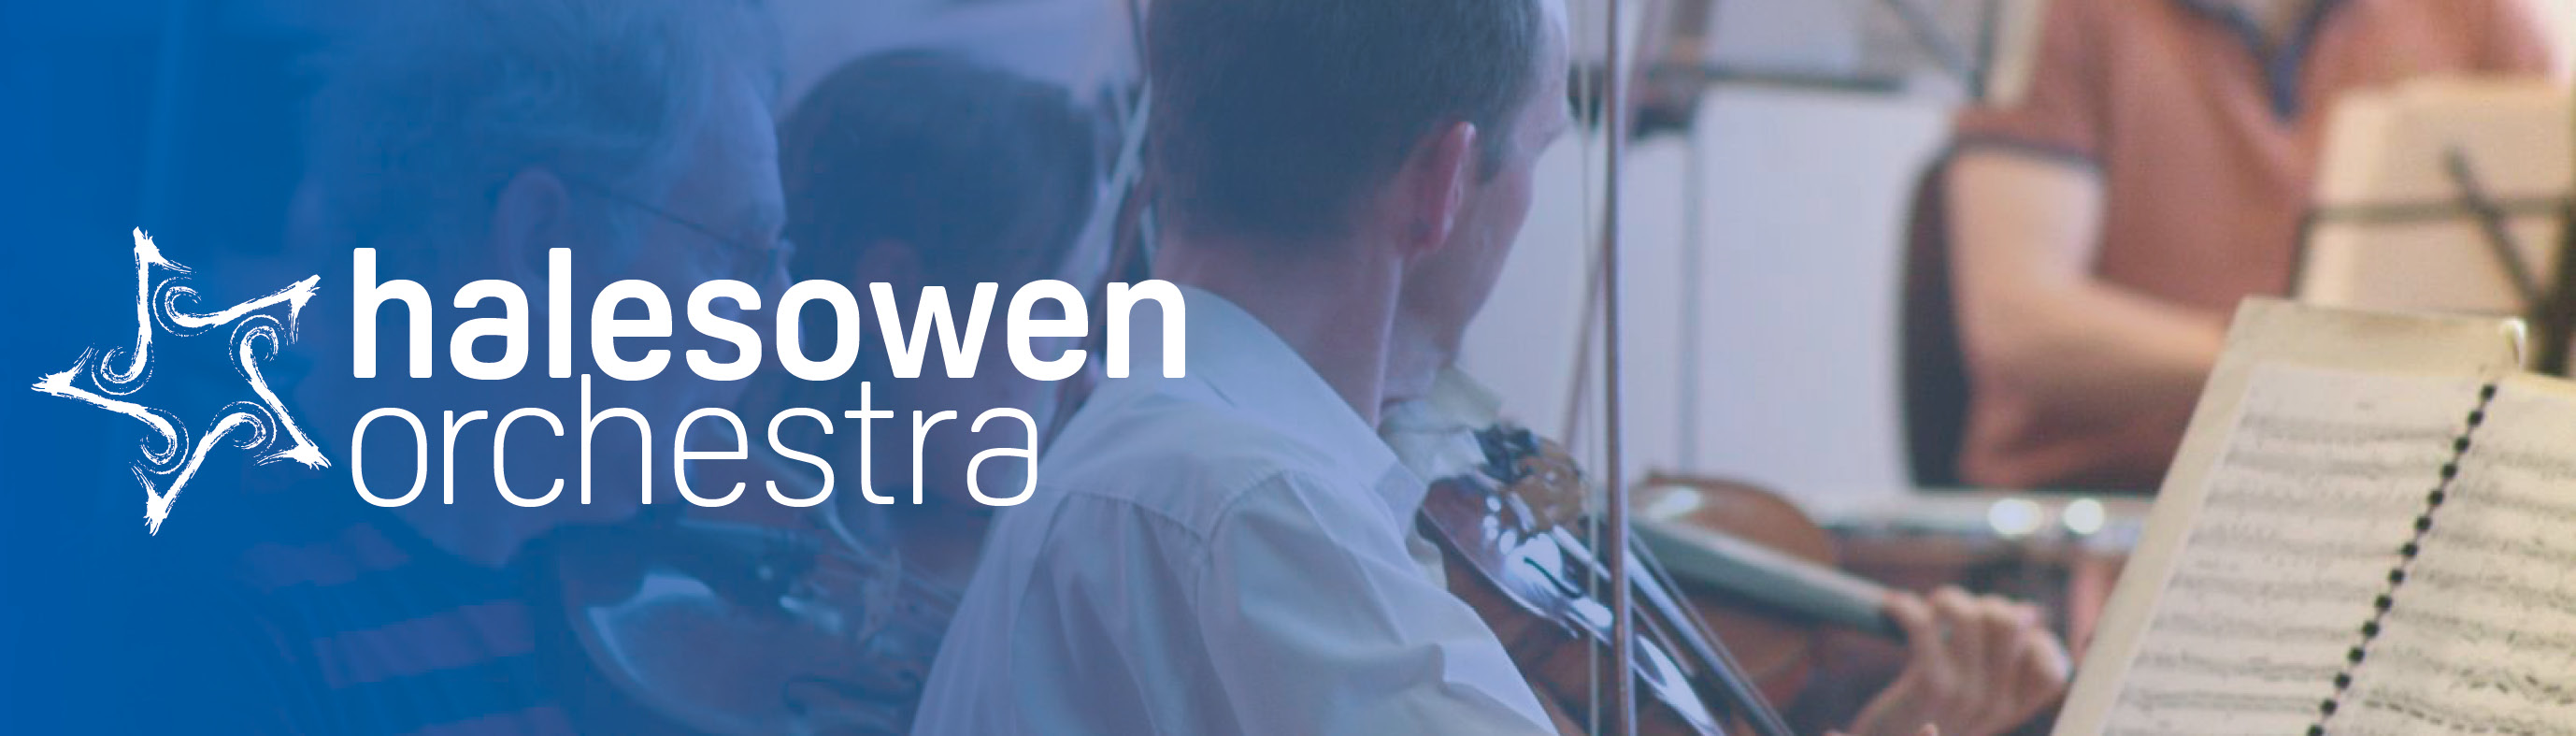 Halesowen Orchestra